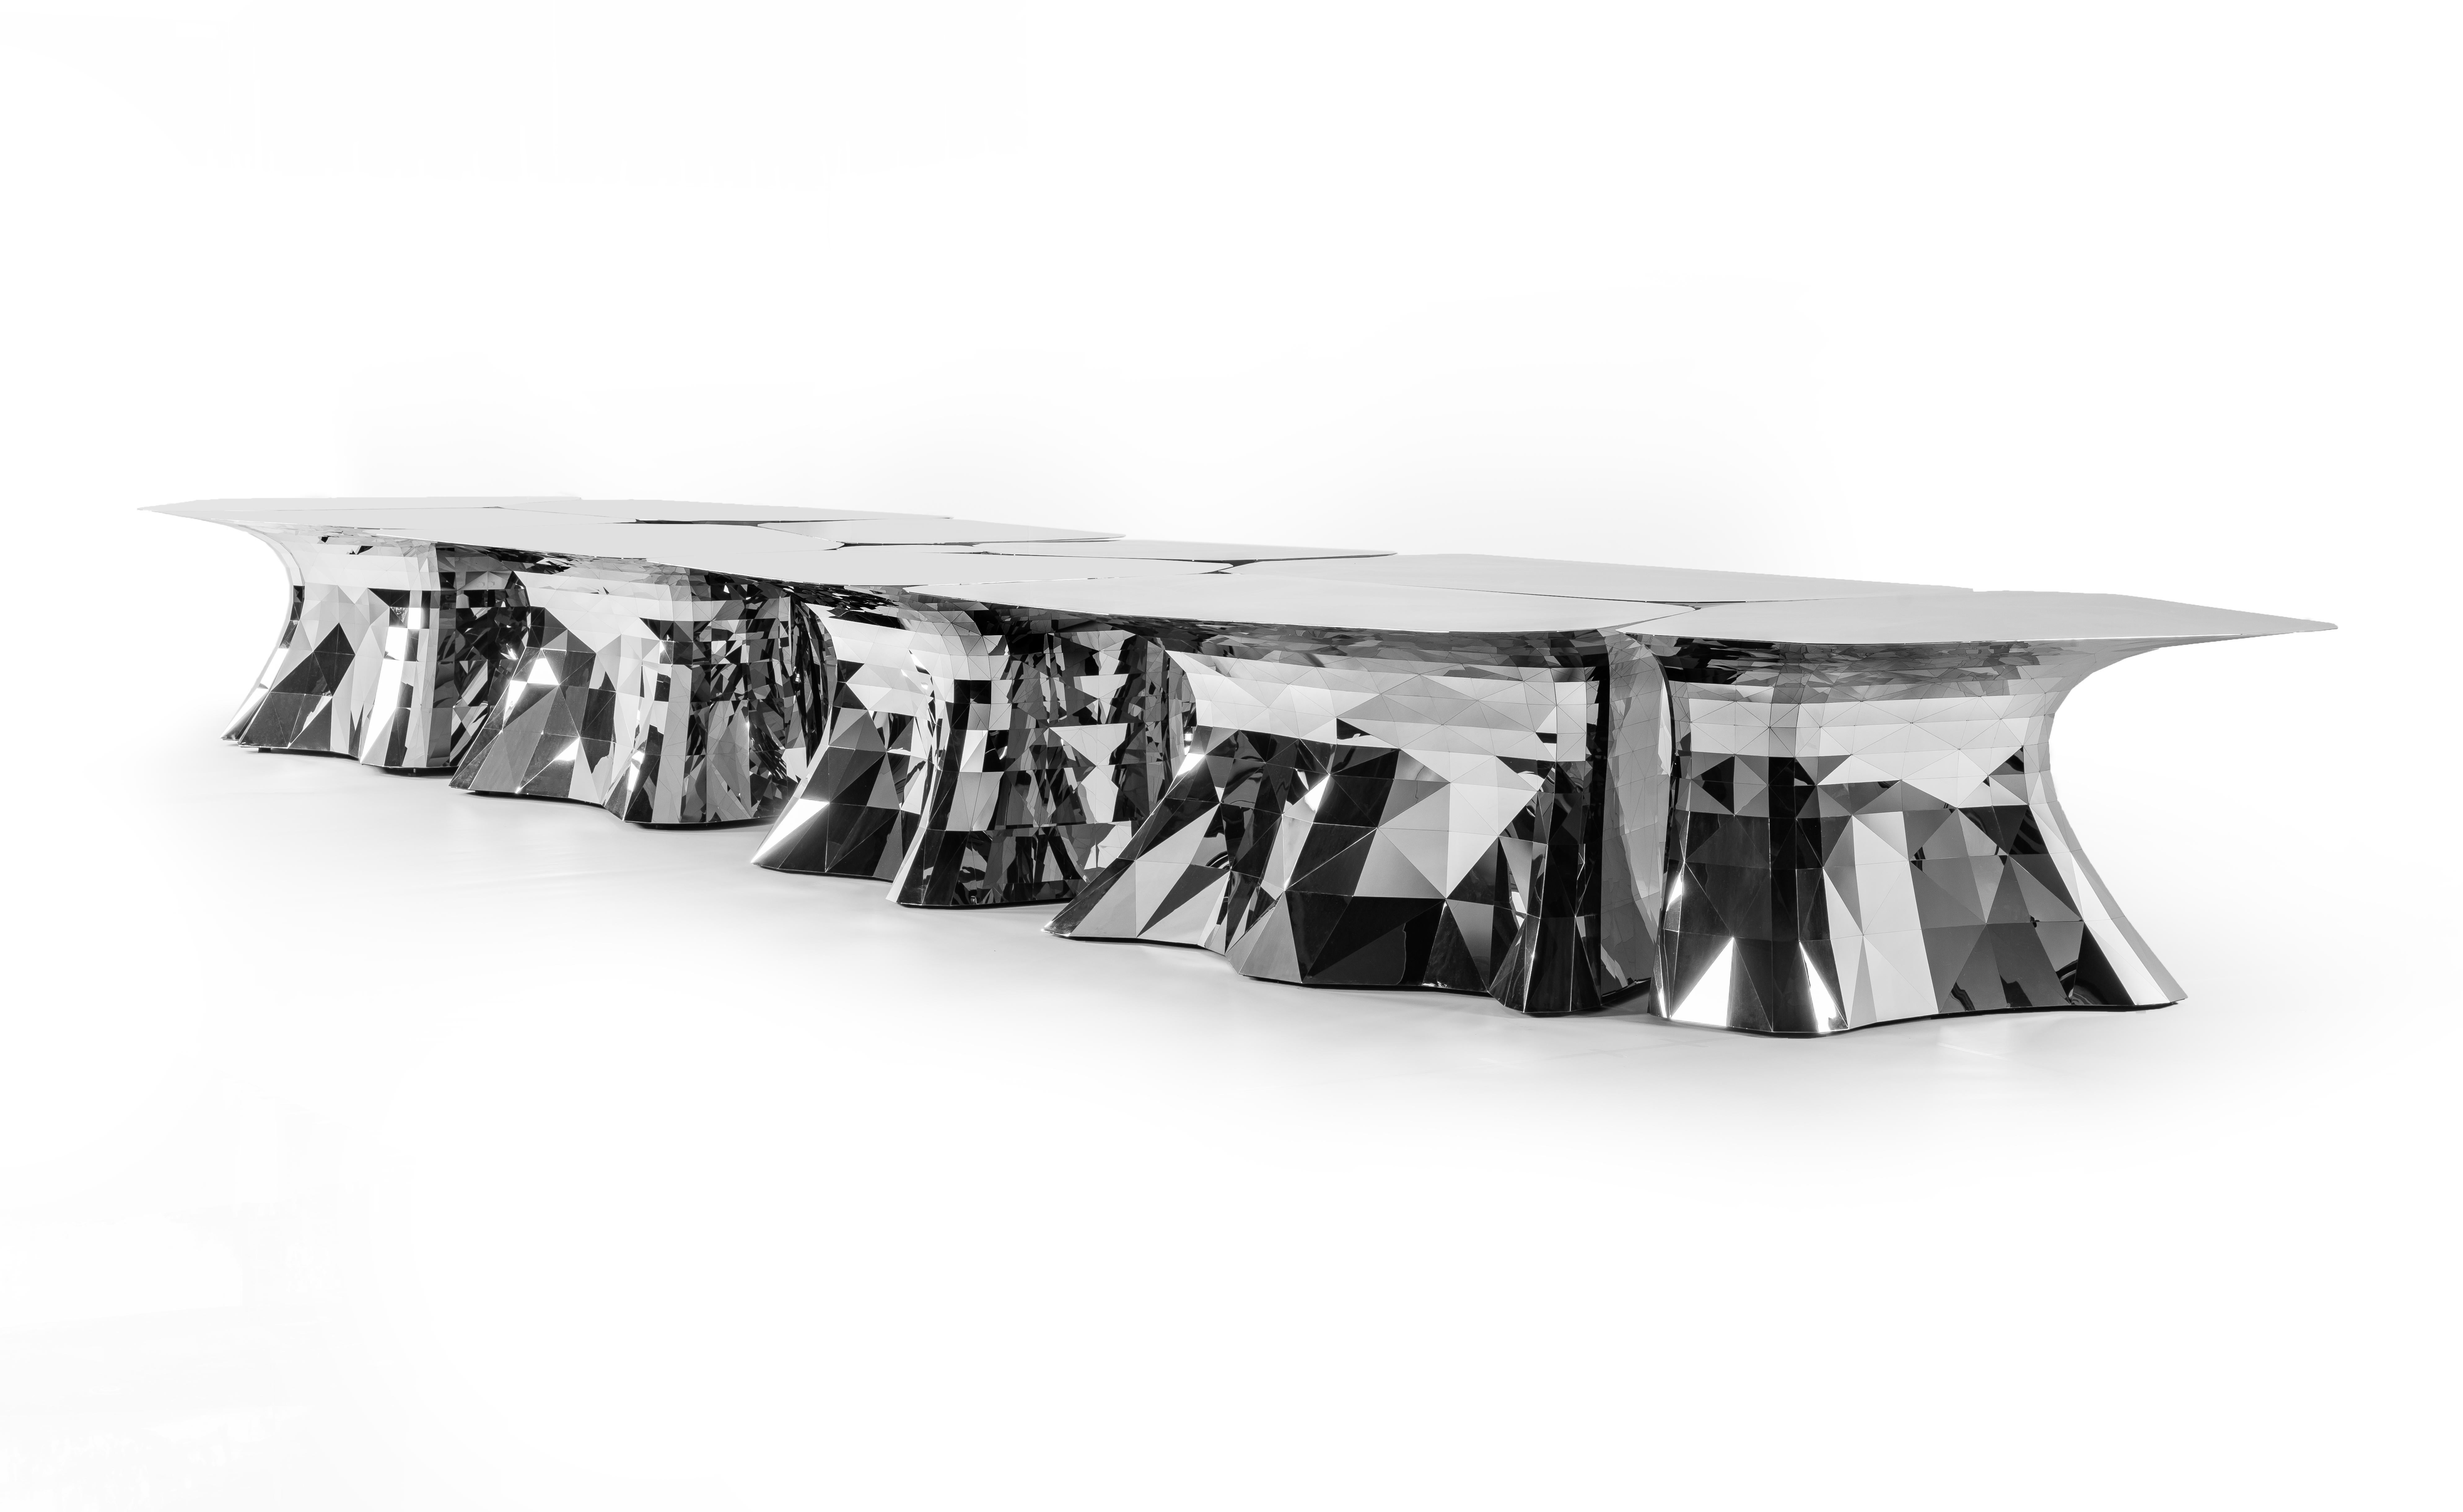 Dieser elegant gestaltete Tisch wurde in digitaler Handarbeit hergestellt, mit denselben Fertigungstechniken, die in Zhoujies digitalem Labor entwickelt wurden. Die digitalen Wurzeln des Werks verleihen ihm eine architektonische und minimale